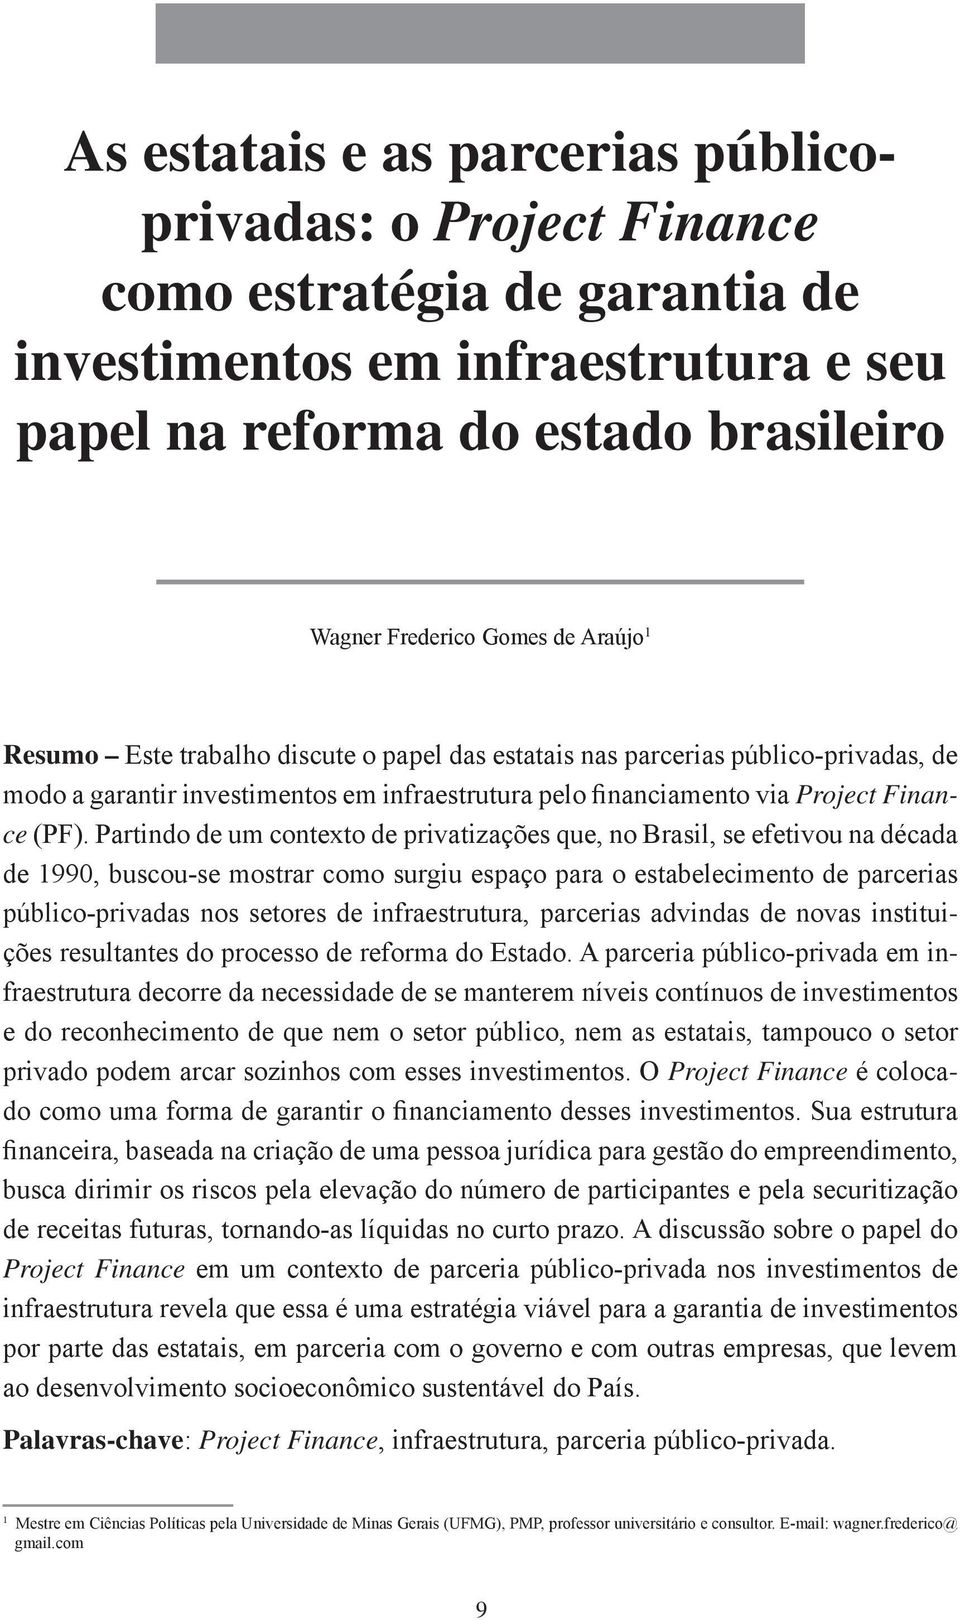 Partindo de um contexto de privatizações que, no Brasil, se efetivou na década de 1990, buscou-se mostrar como surgiu espaço para o estabelecimento de parcerias público-privadas nos setores de